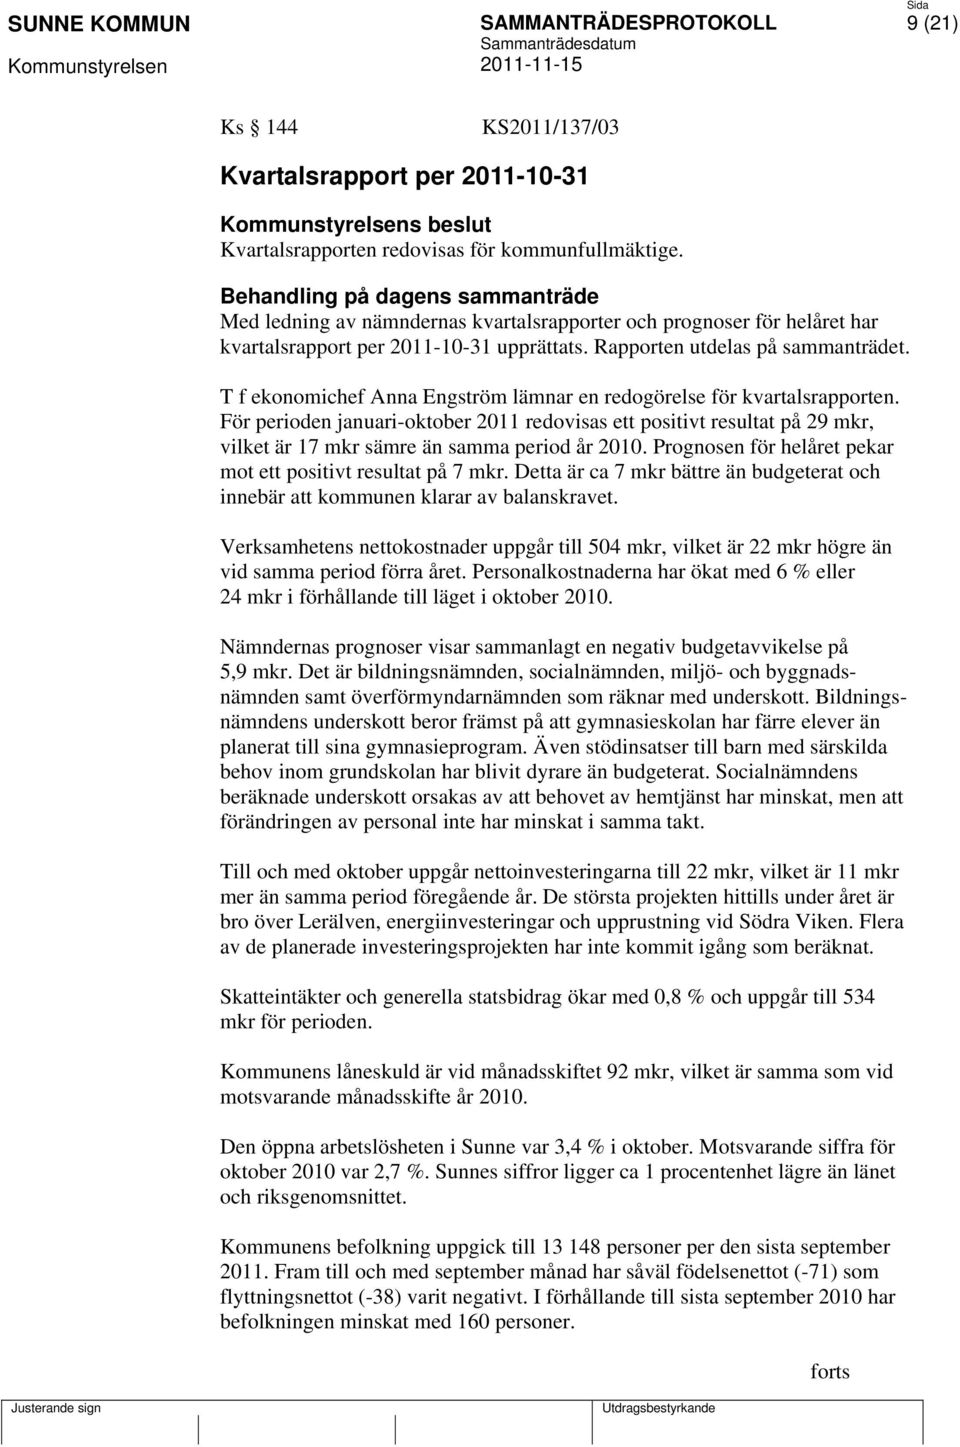 T f ekonomichef Anna Engström lämnar en redogörelse för kvartalsrapporten. För perioden januari-oktober 2011 redovisas ett positivt resultat på 29 mkr, vilket är 17 mkr sämre än samma period år 2010.